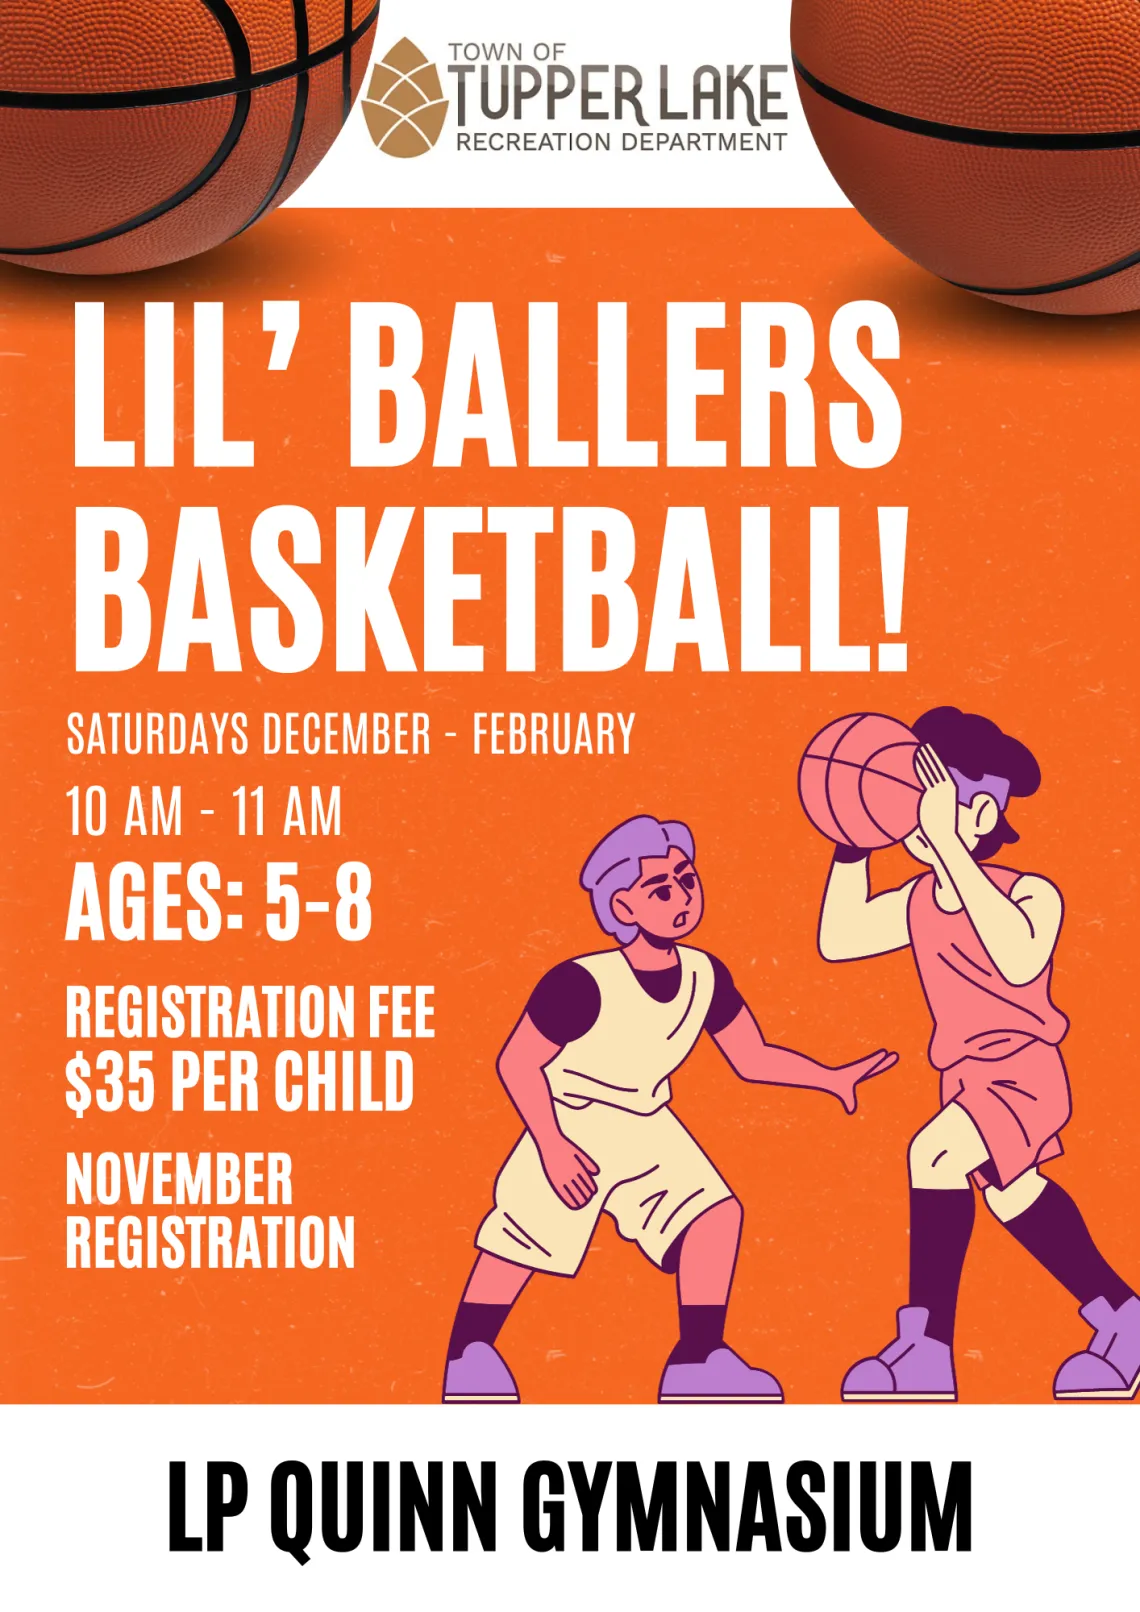 Illustrated flyer advertising the Lil' Ballers basketball program for children in Tupper Lake.